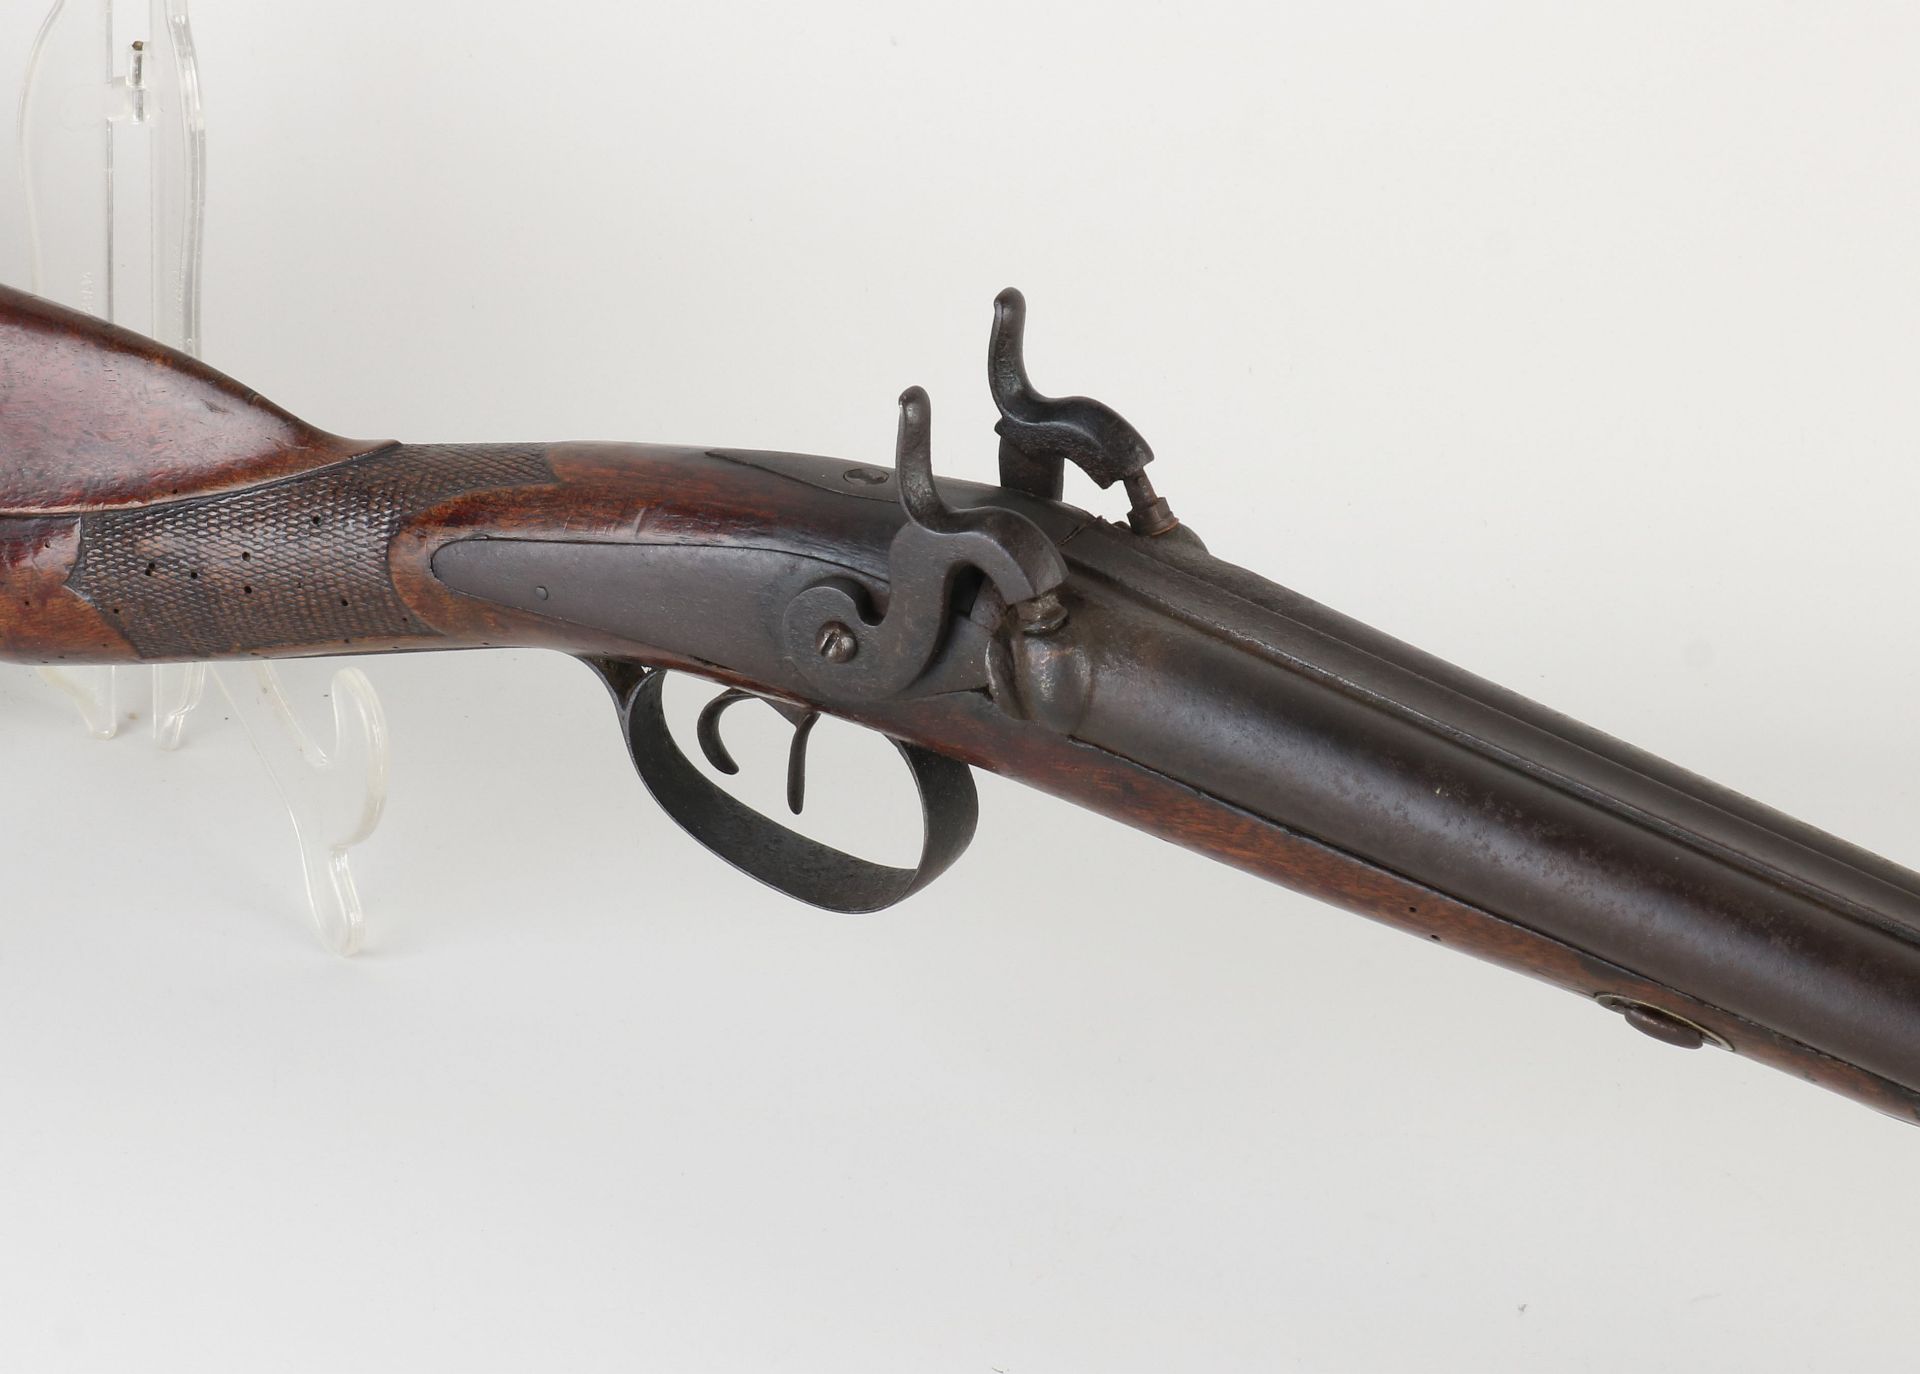 Antique double barrel shotgun, L 122 cm. - Image 2 of 2